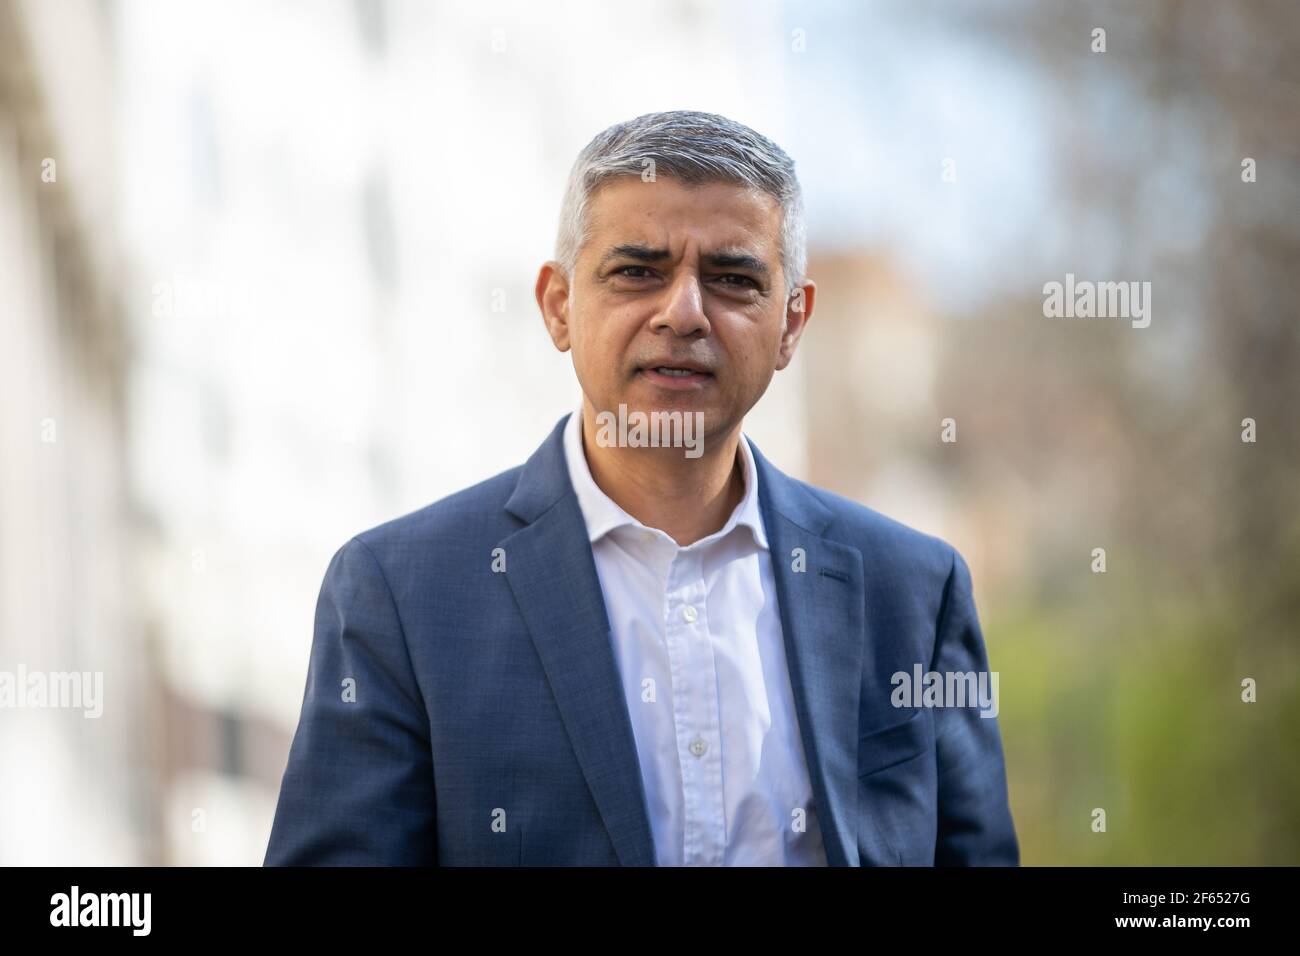 Sadiq Khan kommt am Savoy Place in London an und enthüllt seine Zusage für vier neue Qualifikationsakademien, um Londonern bei der Umschulung und der Suche nach neuen Arbeitsplätzen zu helfen, sowie die Einführung seiner Plakatwand "Jobs, Jobs, Jobs" während der Wahlkampagne für die Londoner Mayoralwahl. Bilddatum: Dienstag, 30. März 2021. Stockfoto